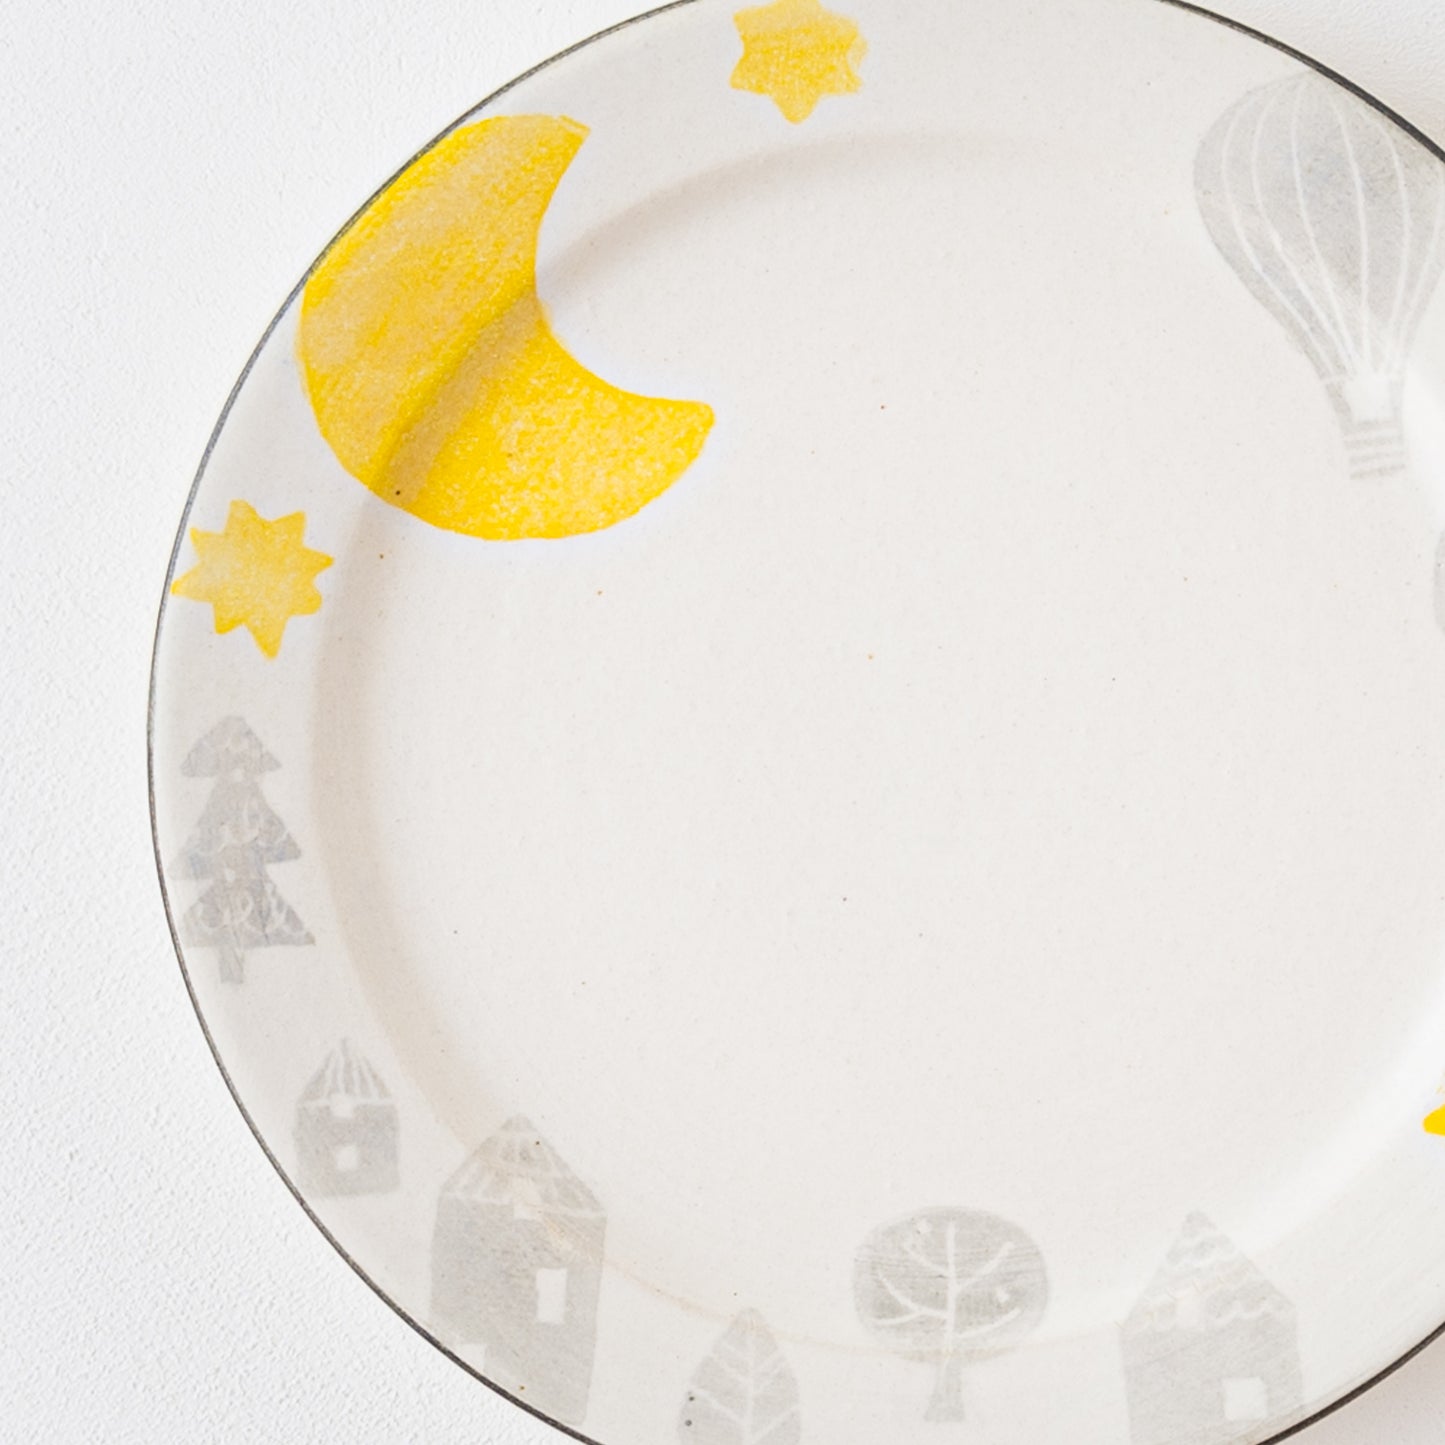 月と気球のやわらかな絵柄にほっこり癒される安見工房の和紙染めメルヘンの6寸リム皿